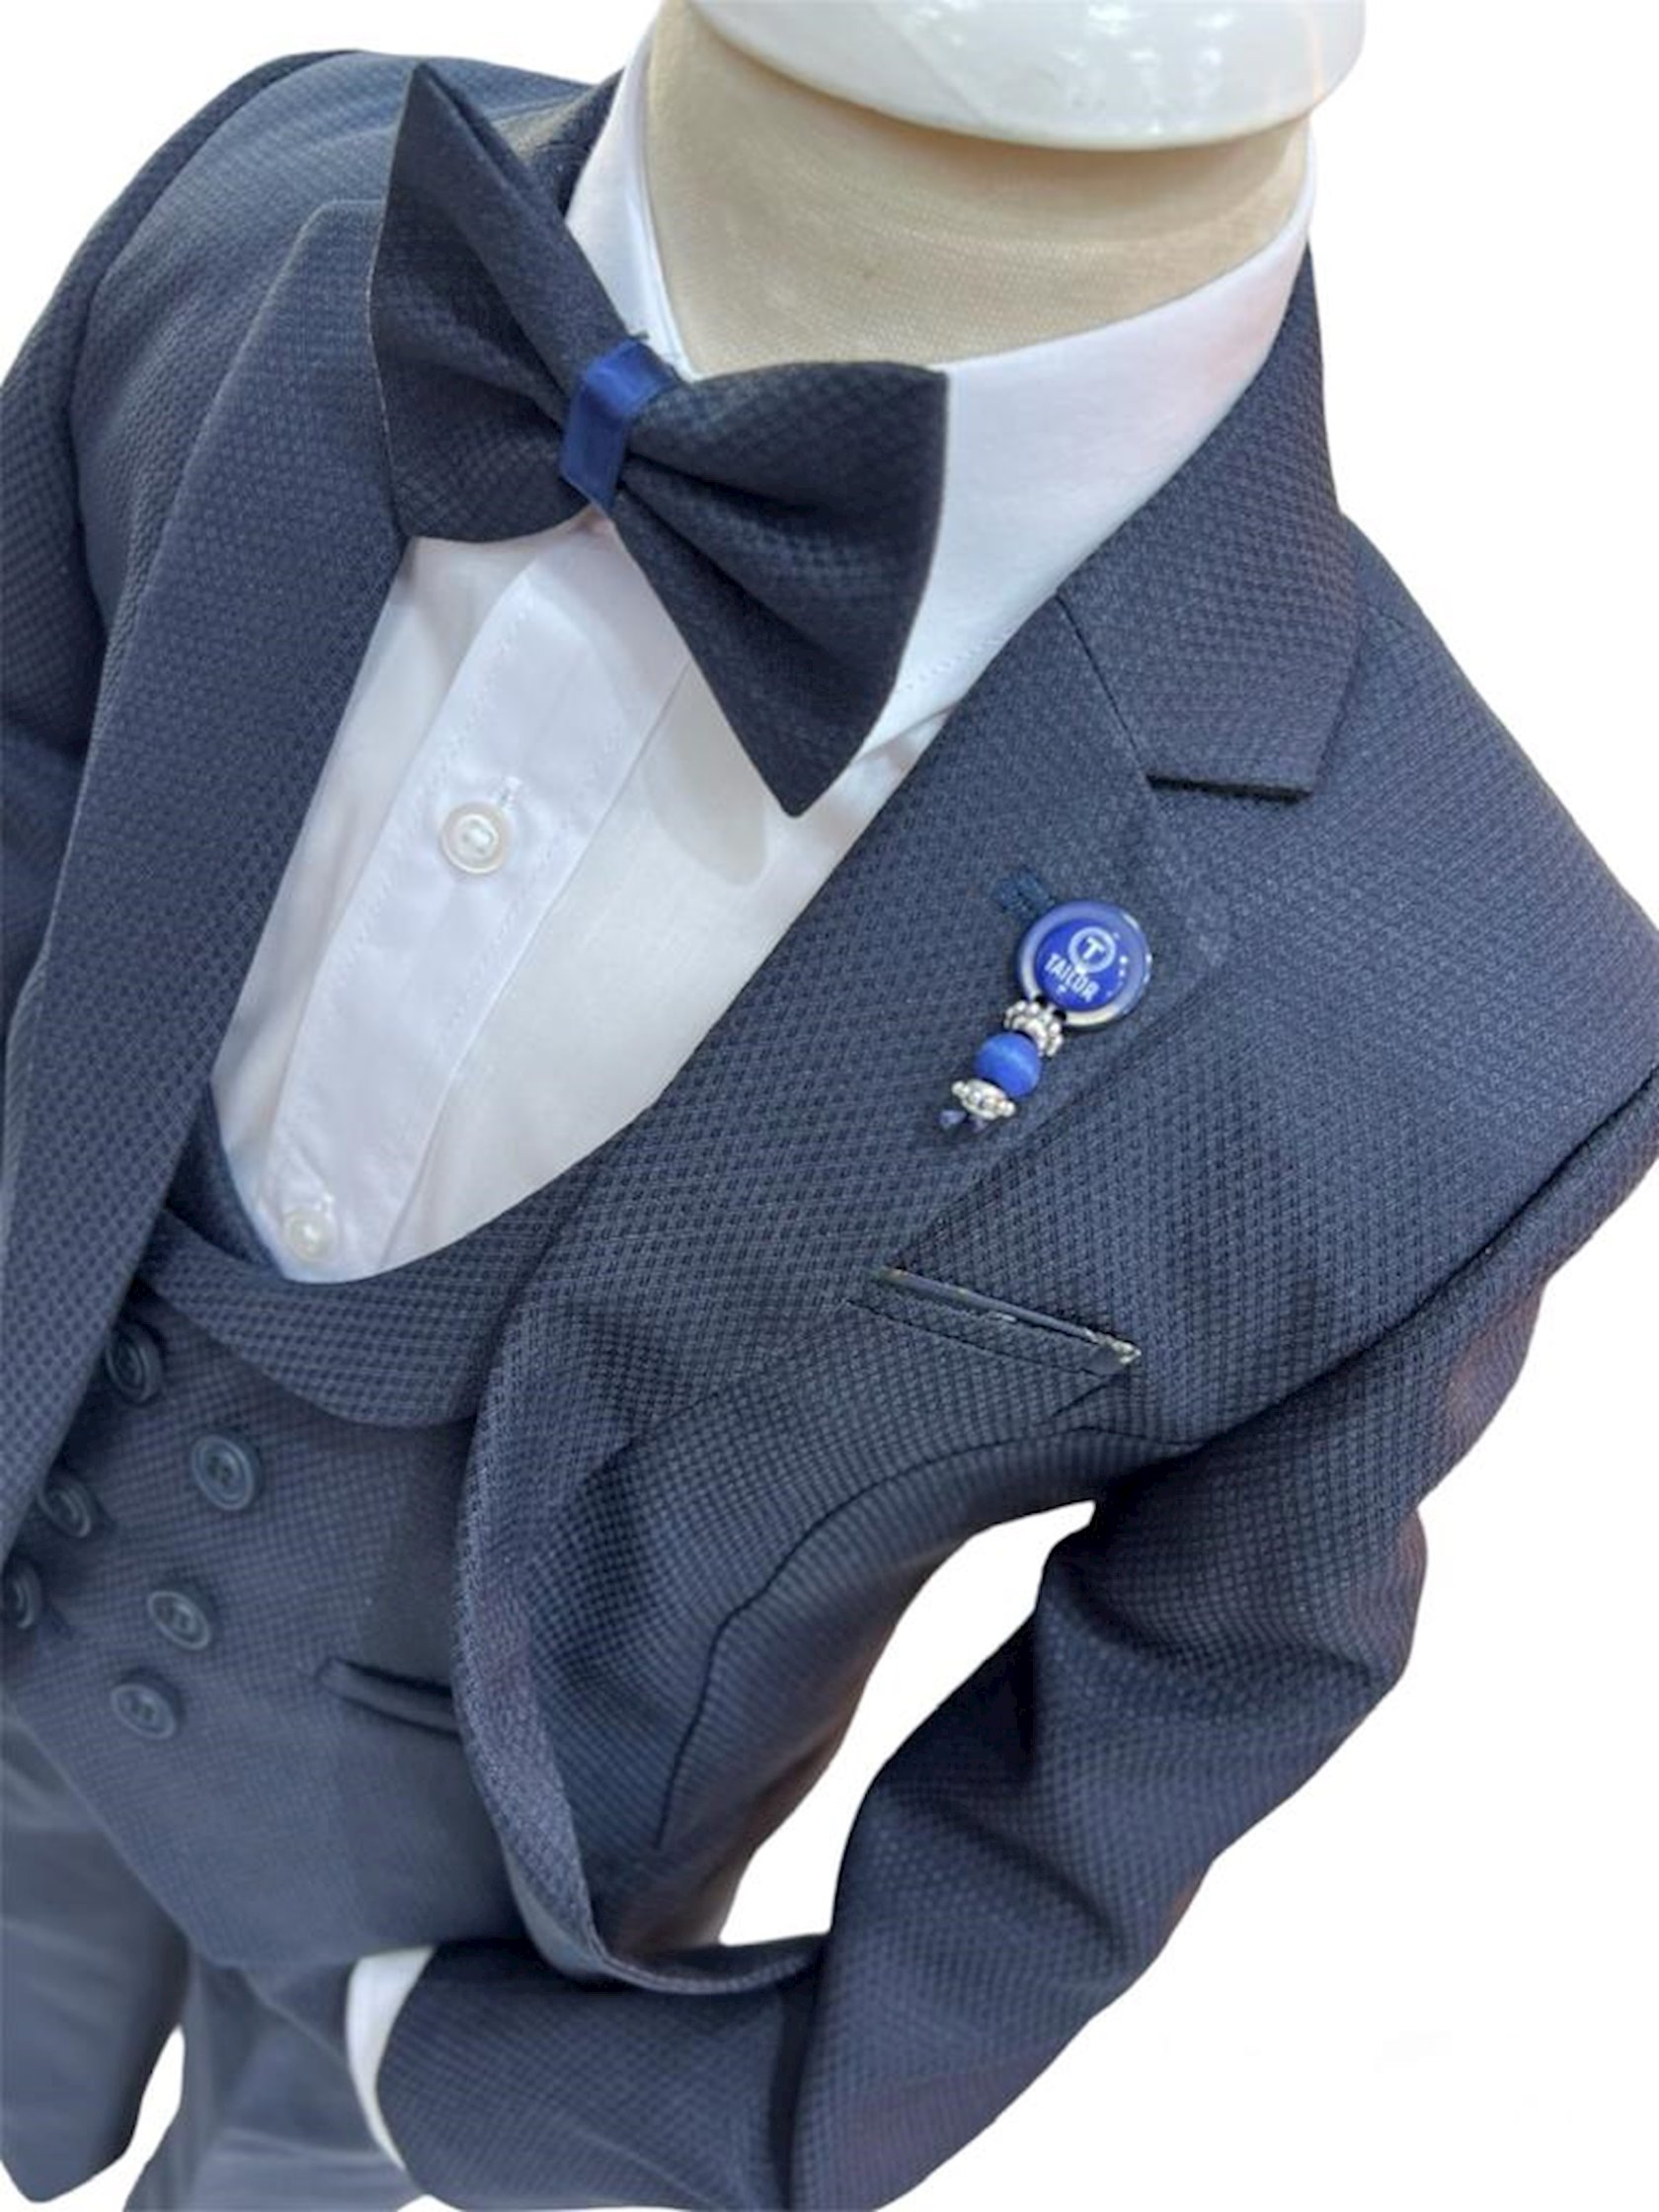 Костюм с брюками для мальчиков Tailor SSPPUM_2406, голубой,  полиэстер/хлопок, размер 8 лет - купить в Баку. Цена, обзор, отзывы, продажа